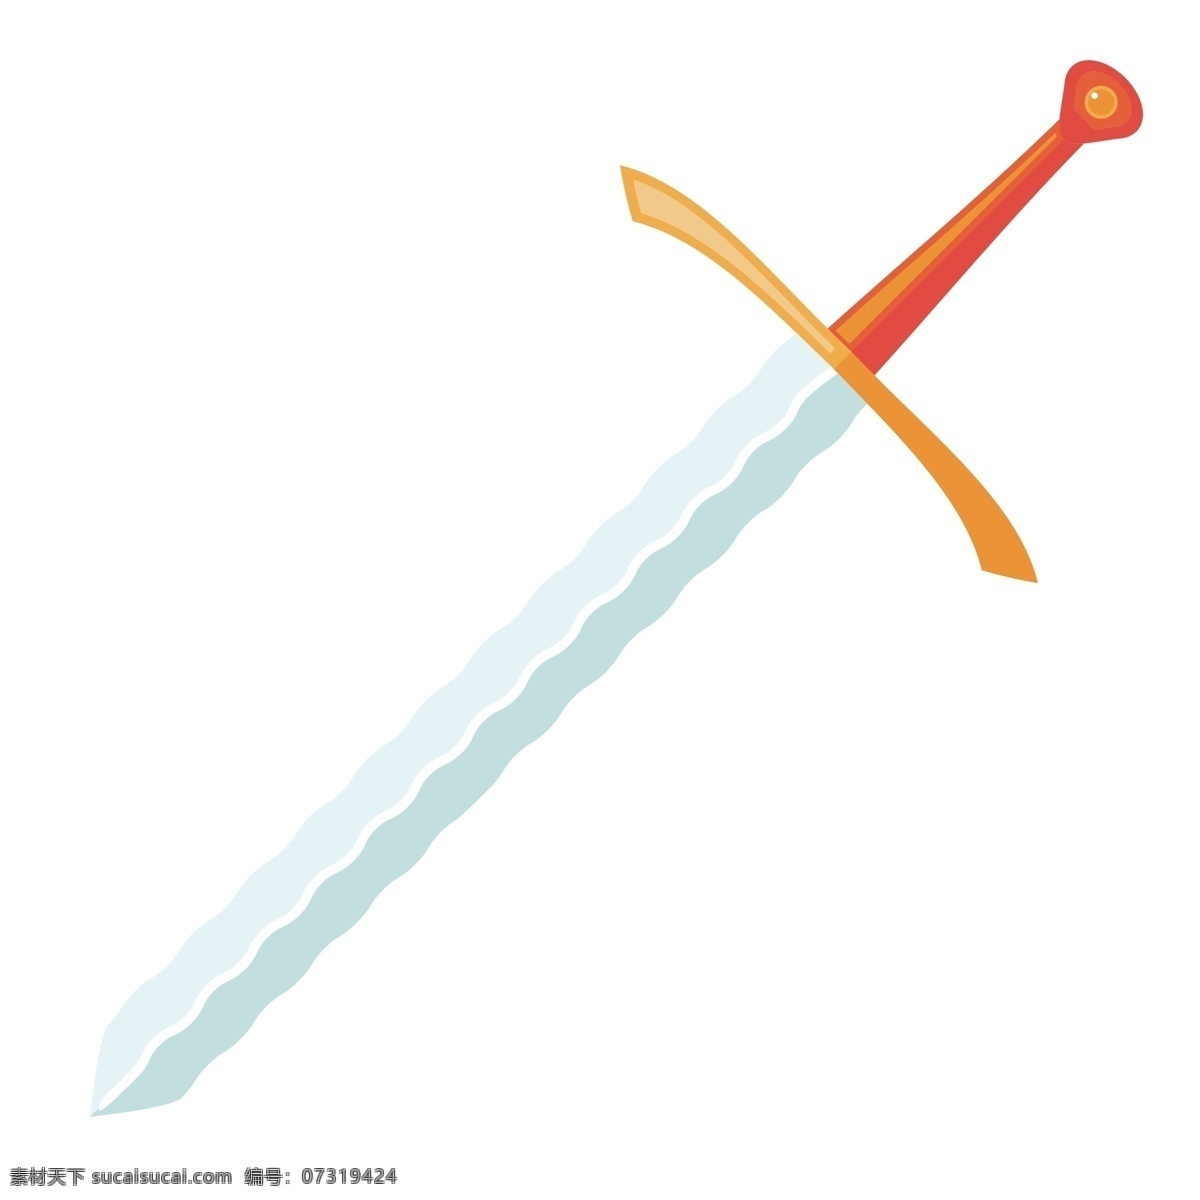 锋利 宝剑 装饰 插画 锋利的宝剑 黄色的宝剑 古风宝剑 漂亮的宝剑 创意宝剑 立体宝剑 精美宝剑